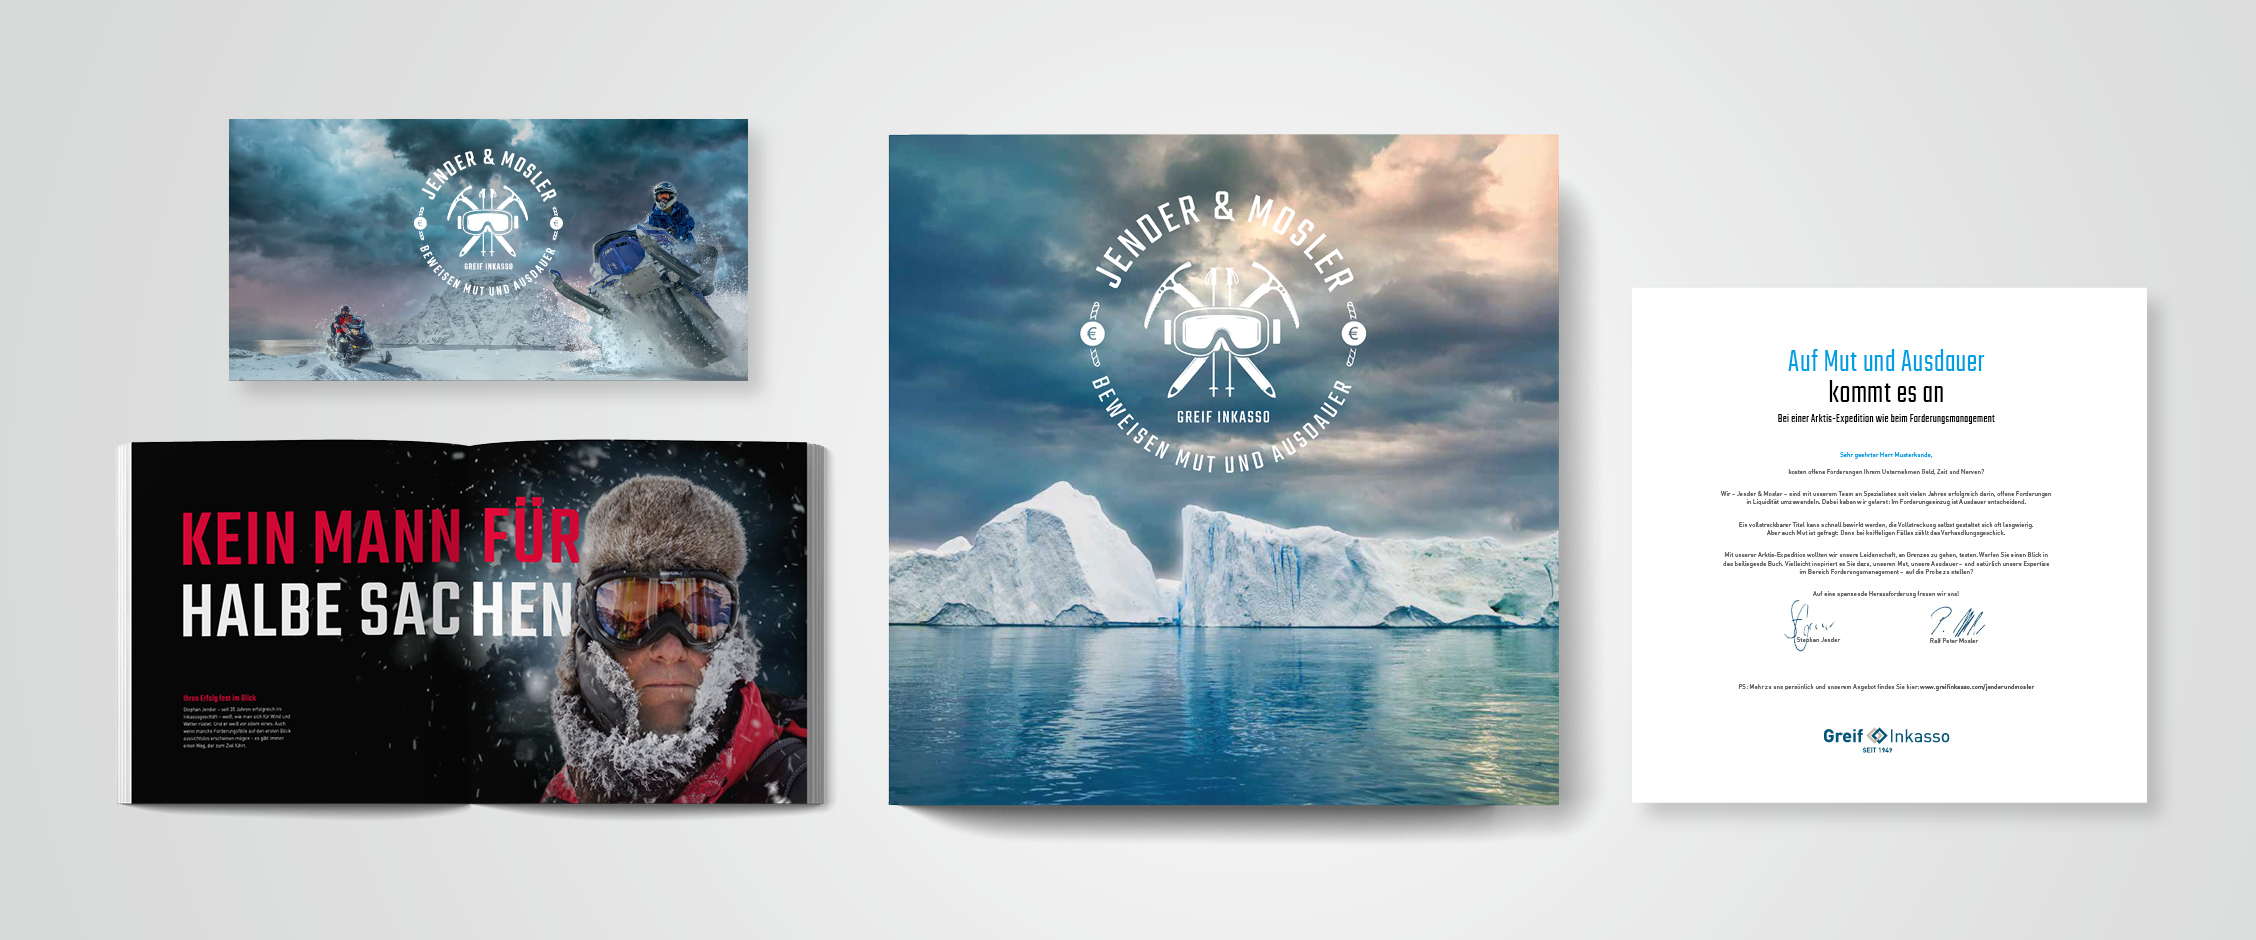 Storytelling Case Study Greif Inkasso | Mailing Mut und Ausdauer als Arktisforscher